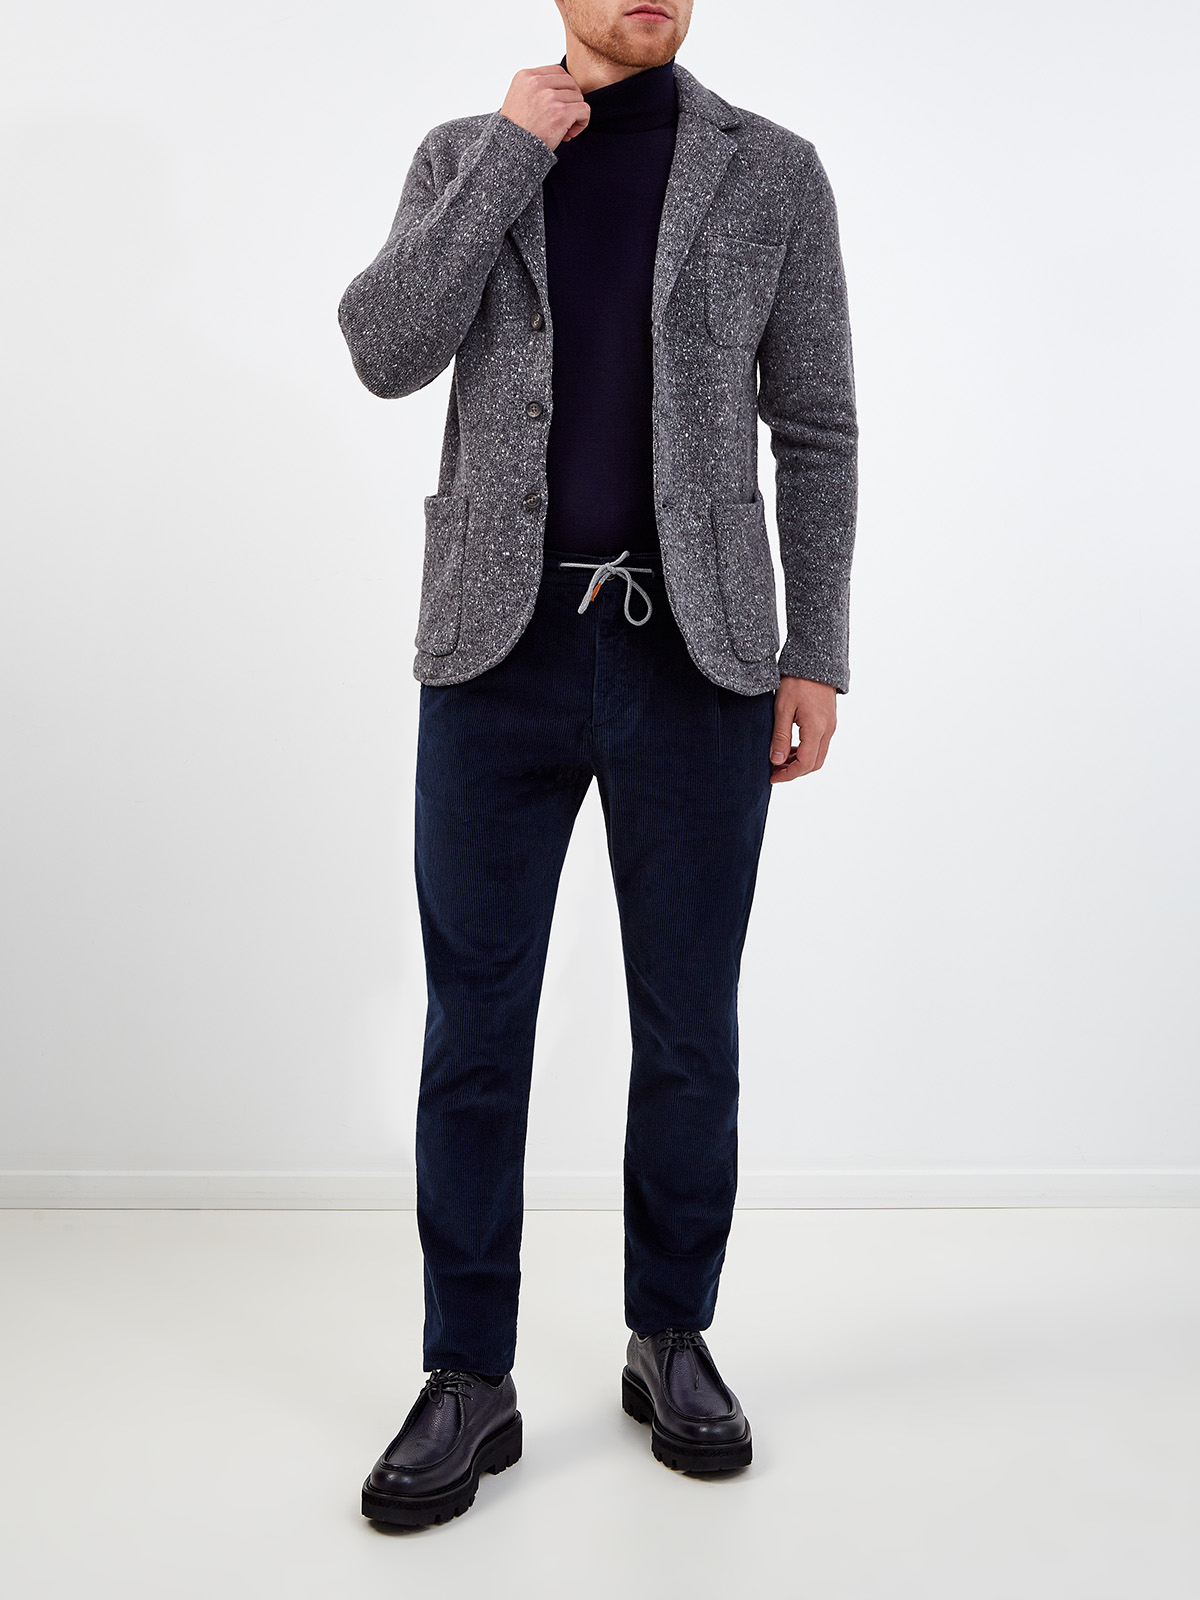 Меланжевый пиджак в стиле casual из шерсти и кашемира ELEVENTY, цвет серый, размер 48;52;54;56 - фото 2